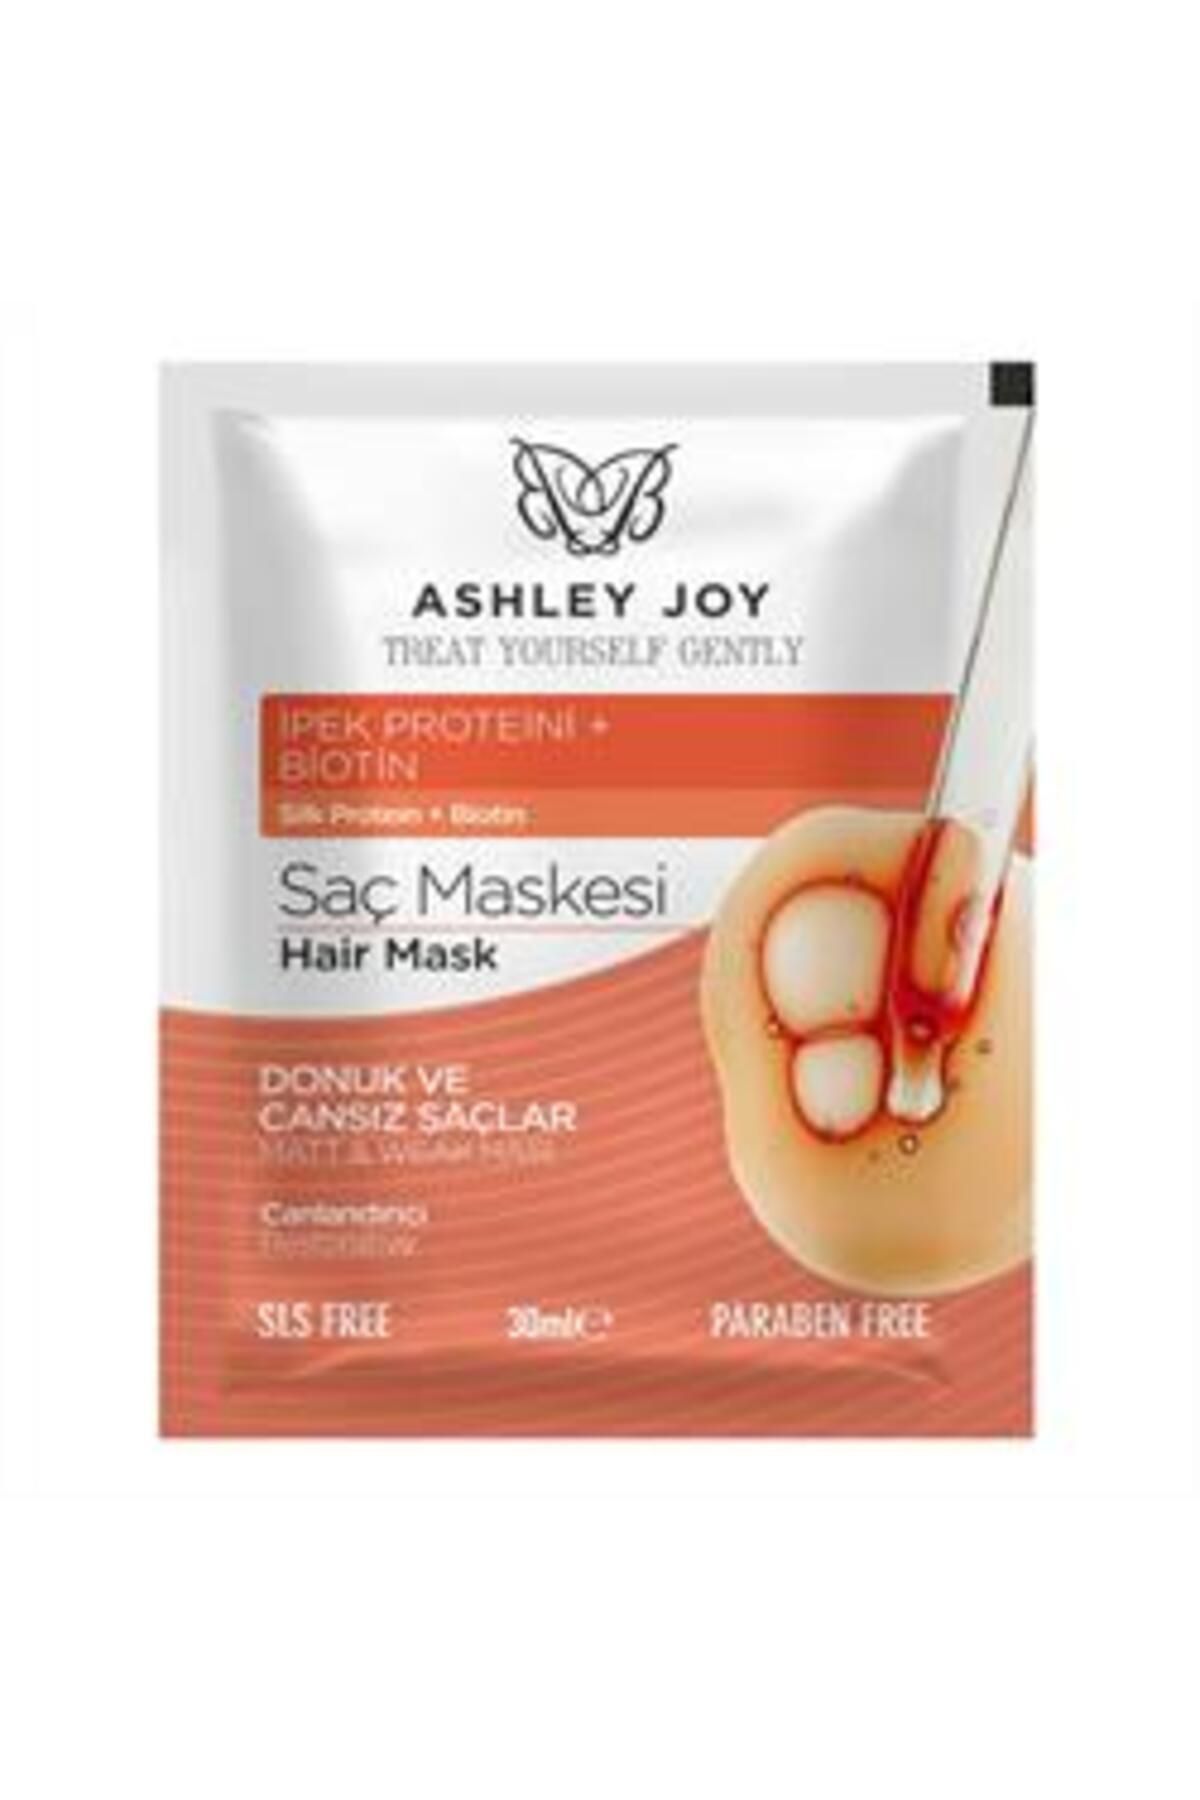 Ashley Joy Saç Maskesi Canlandırıcı 30ml ( 1 ADET )